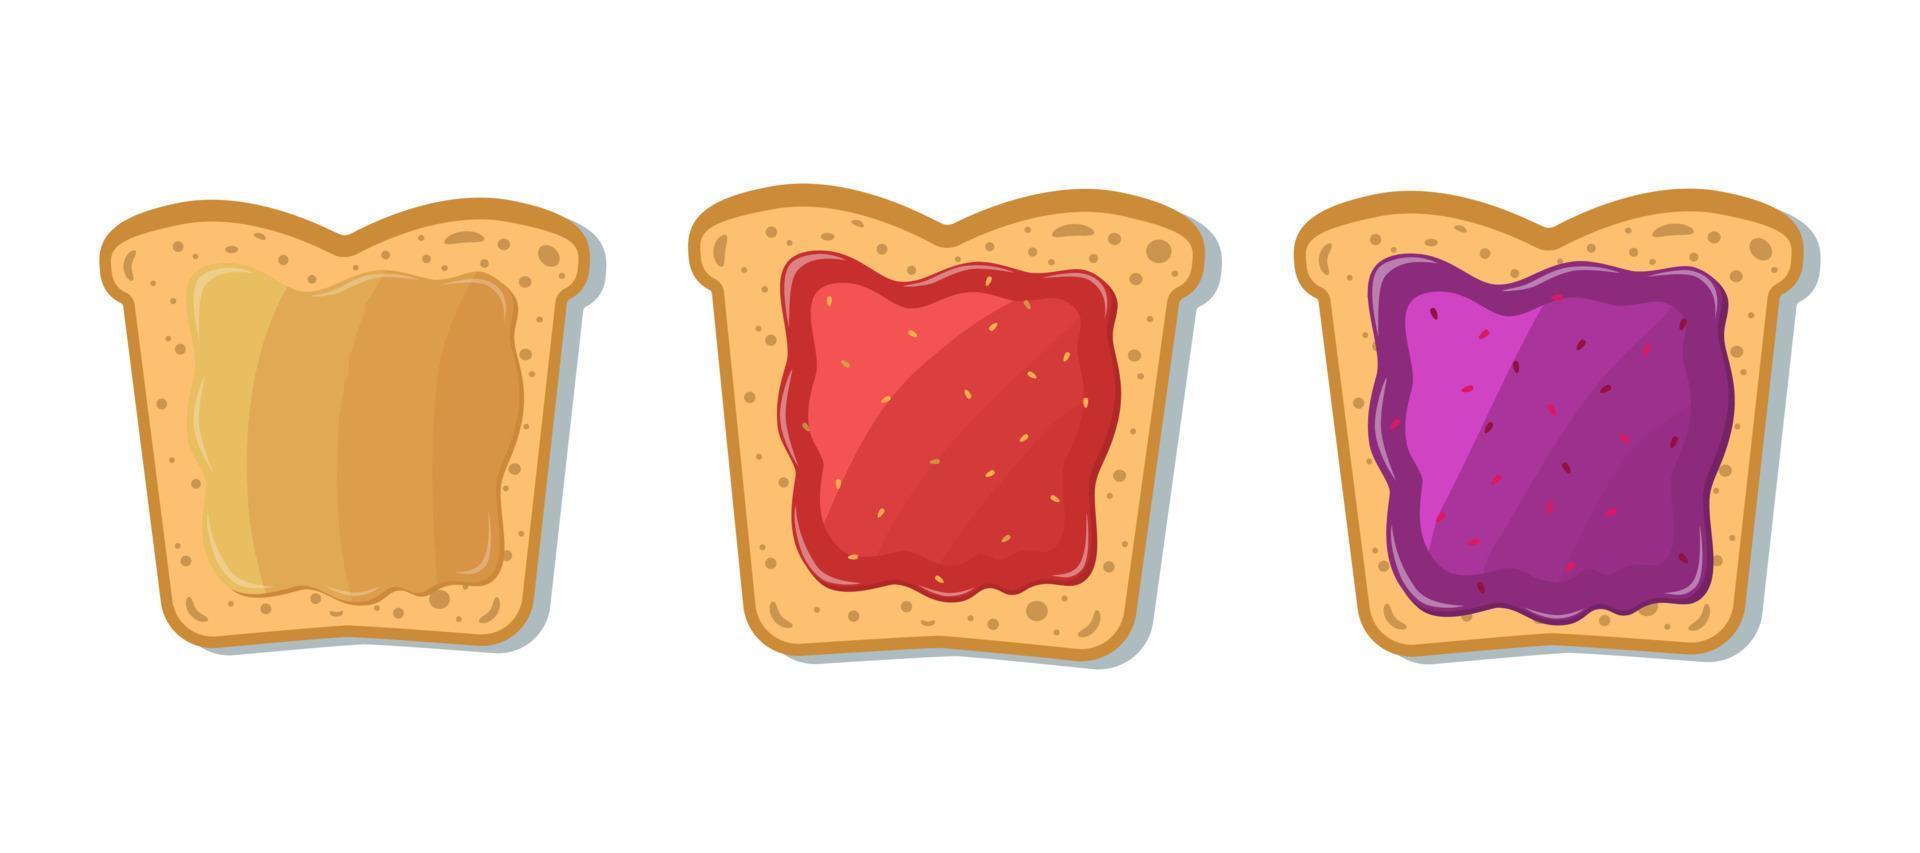 ensemble de pain grillé avec de la confiture et du beurre d'arachide. illustration vectorielle en style cartoon. vecteur